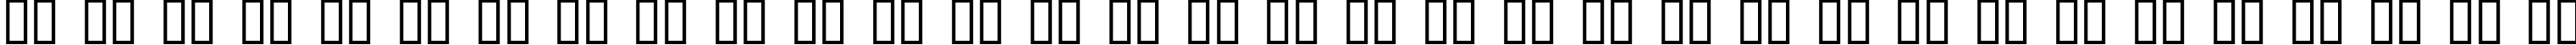 Пример написания русского алфавита шрифтом Procyon